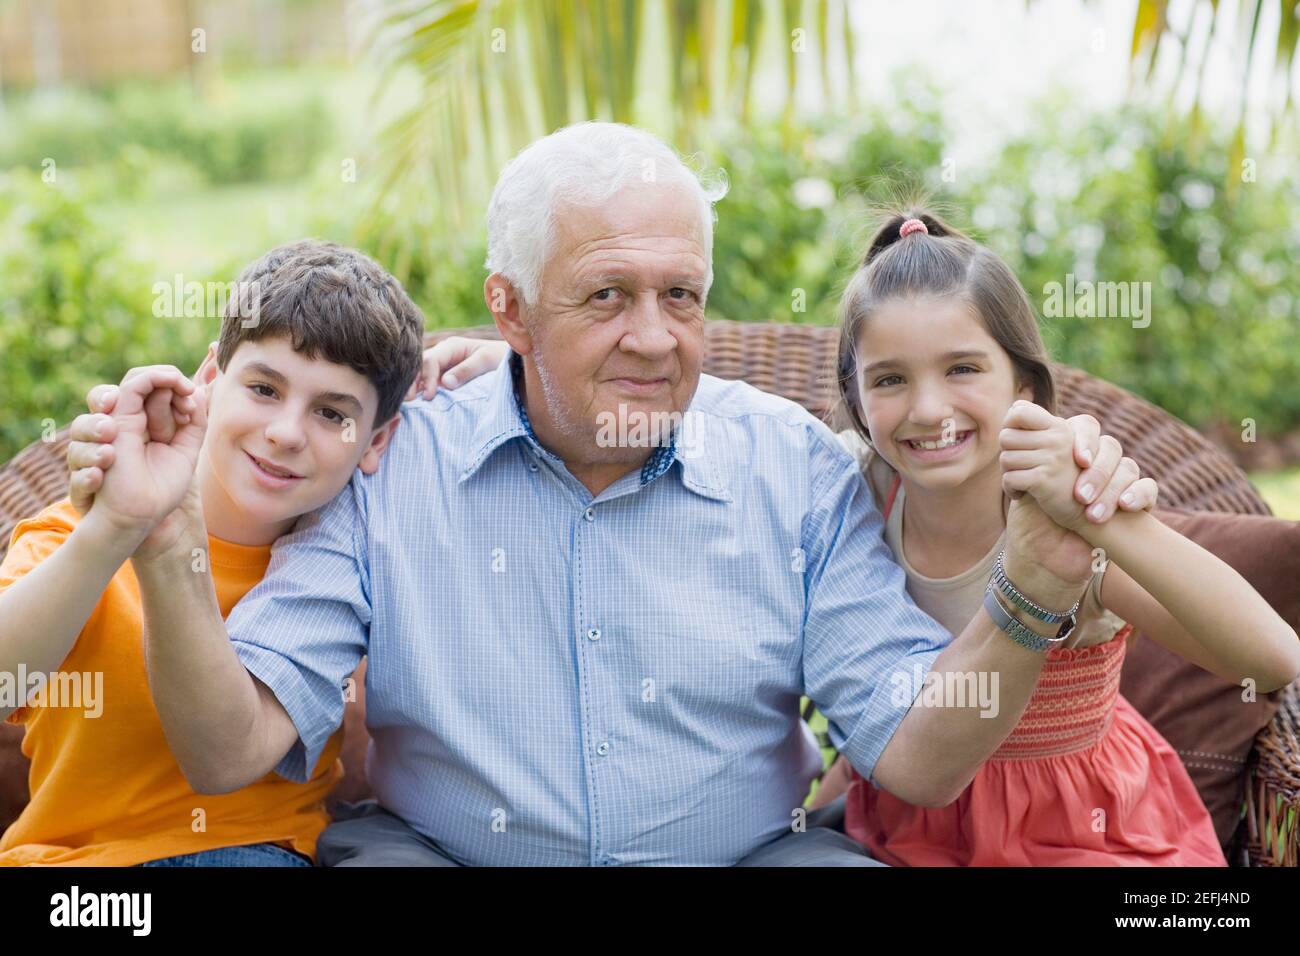 Porträt eines älteren Mannes, der seine grandchildrenÅ½s Hände hält und Lächelnd Stockfoto